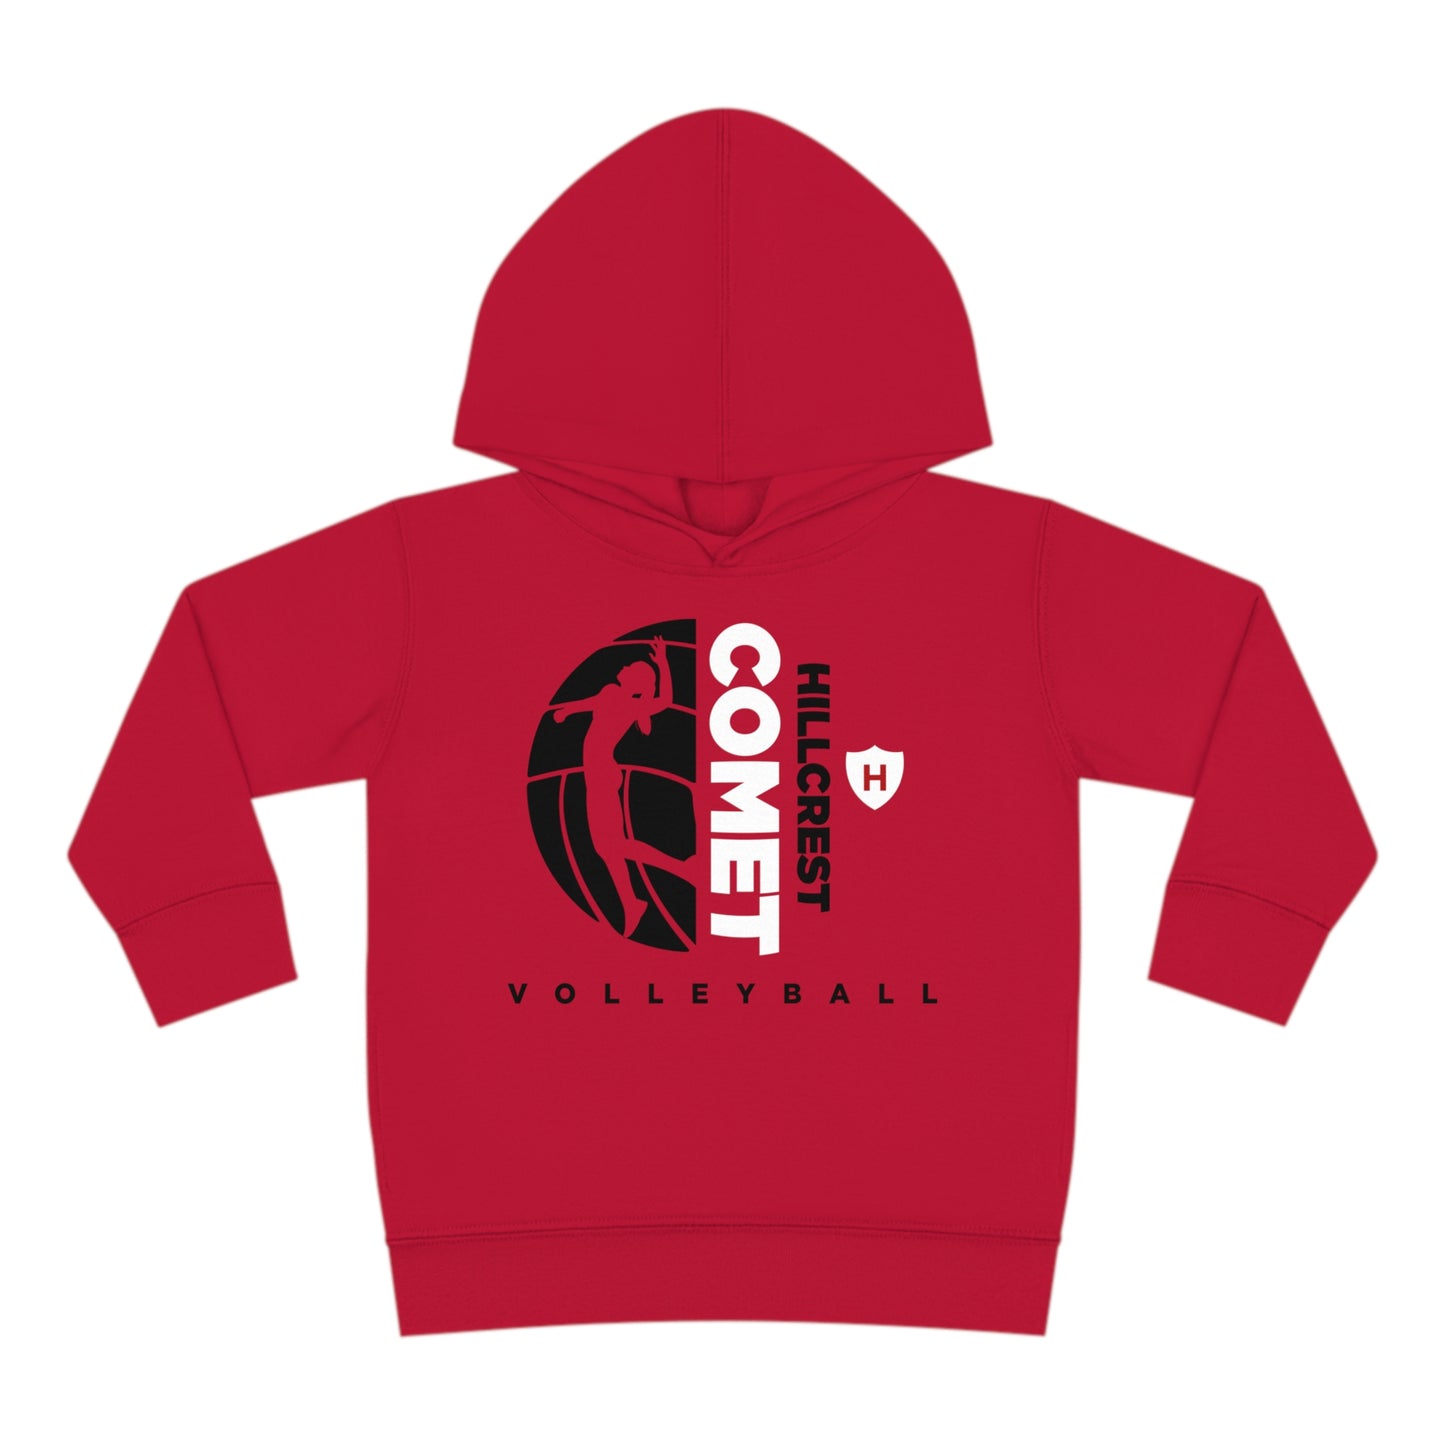 Comet Volleyball - Toddler Pullover Fleece Hoodie